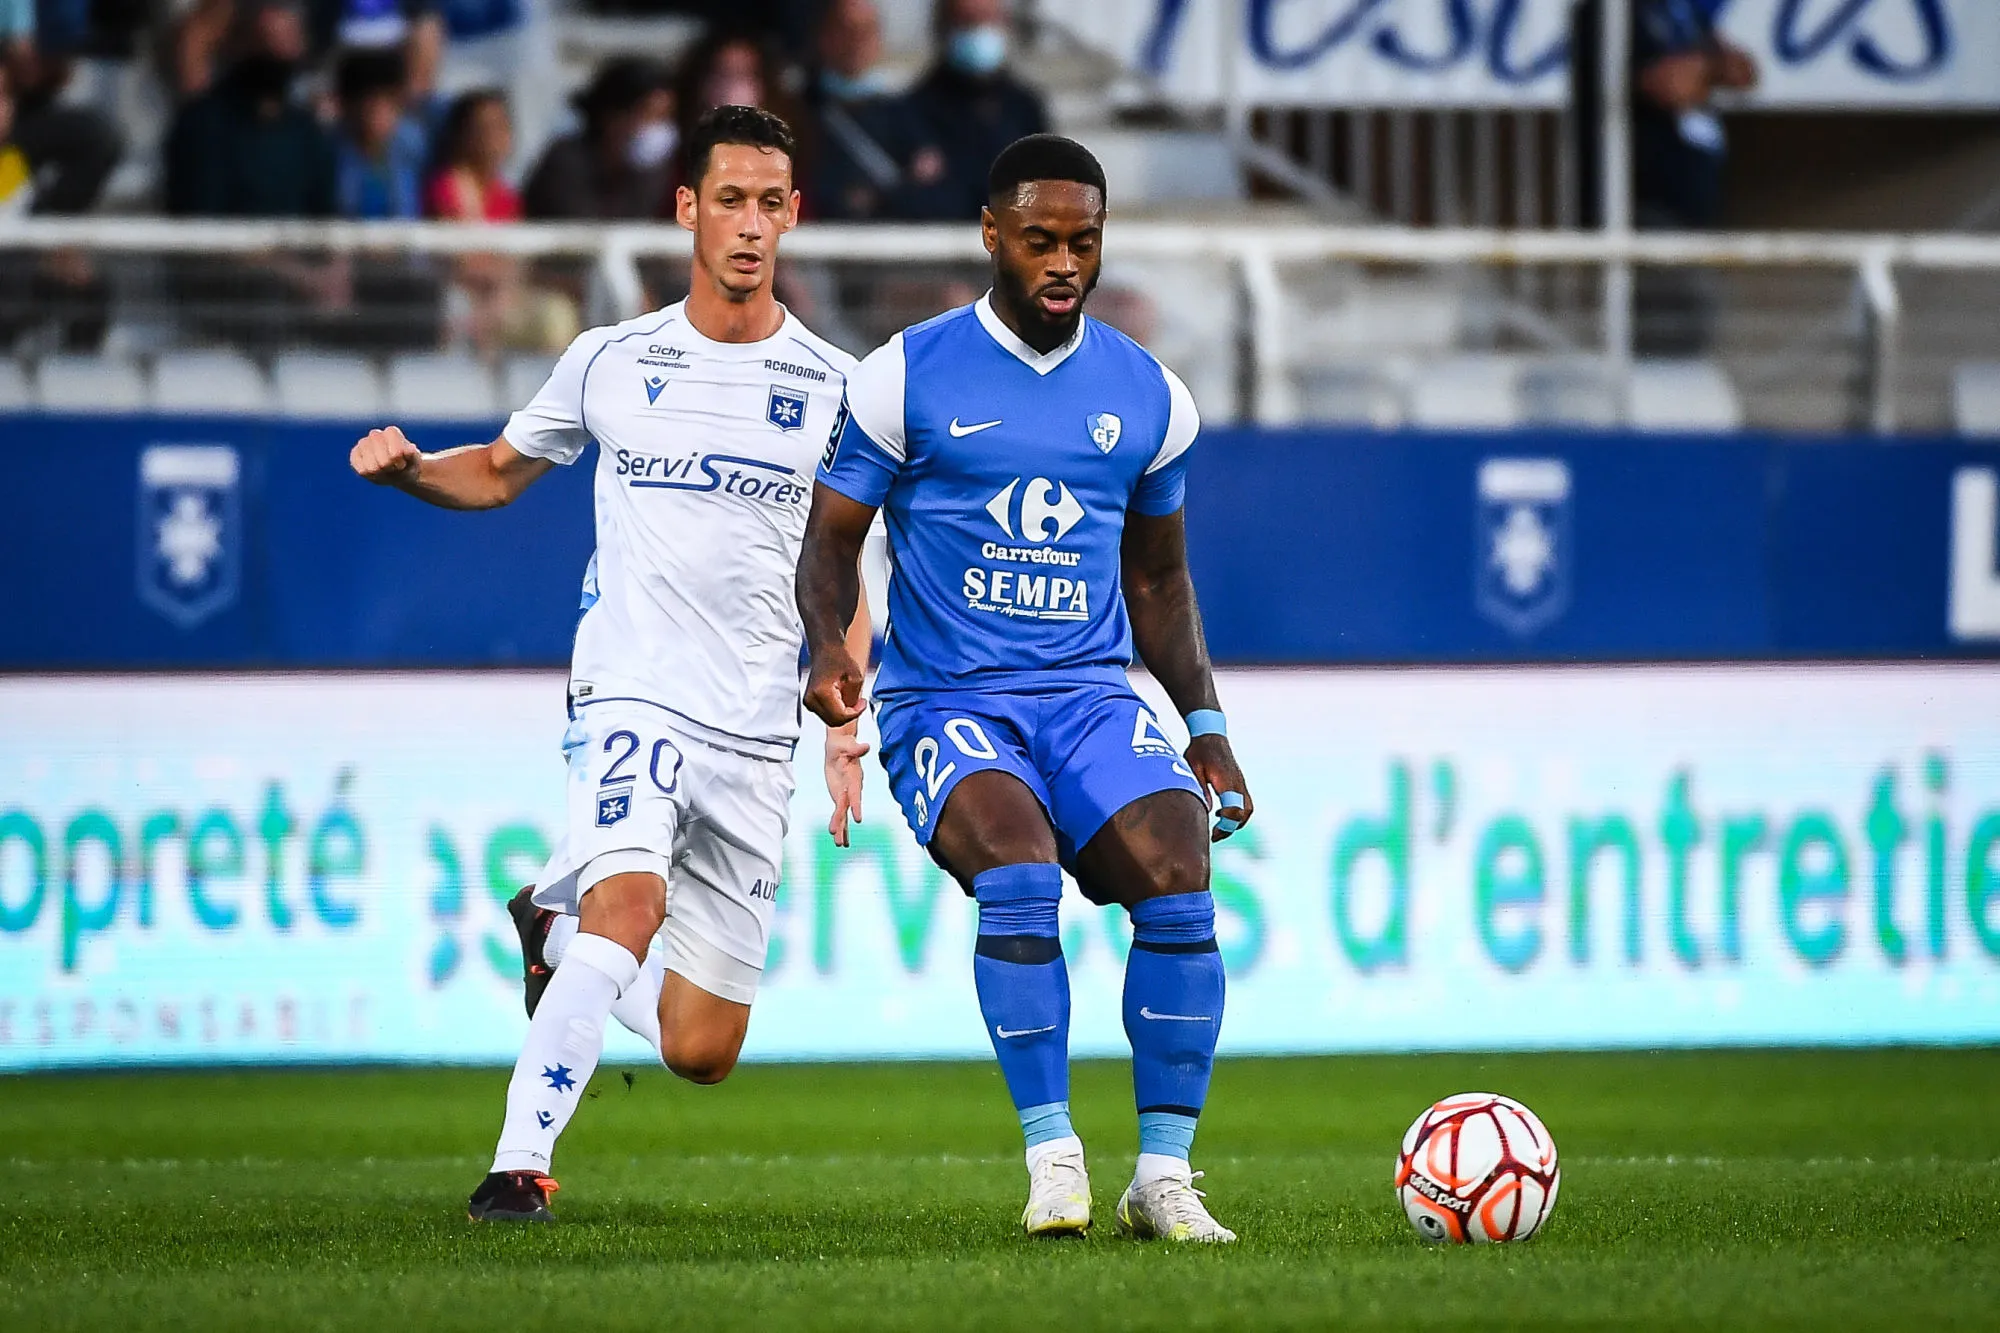 Pronostic Quevilly Rouen Grenoble : Analyse, cotes et prono du match de Ligue 2